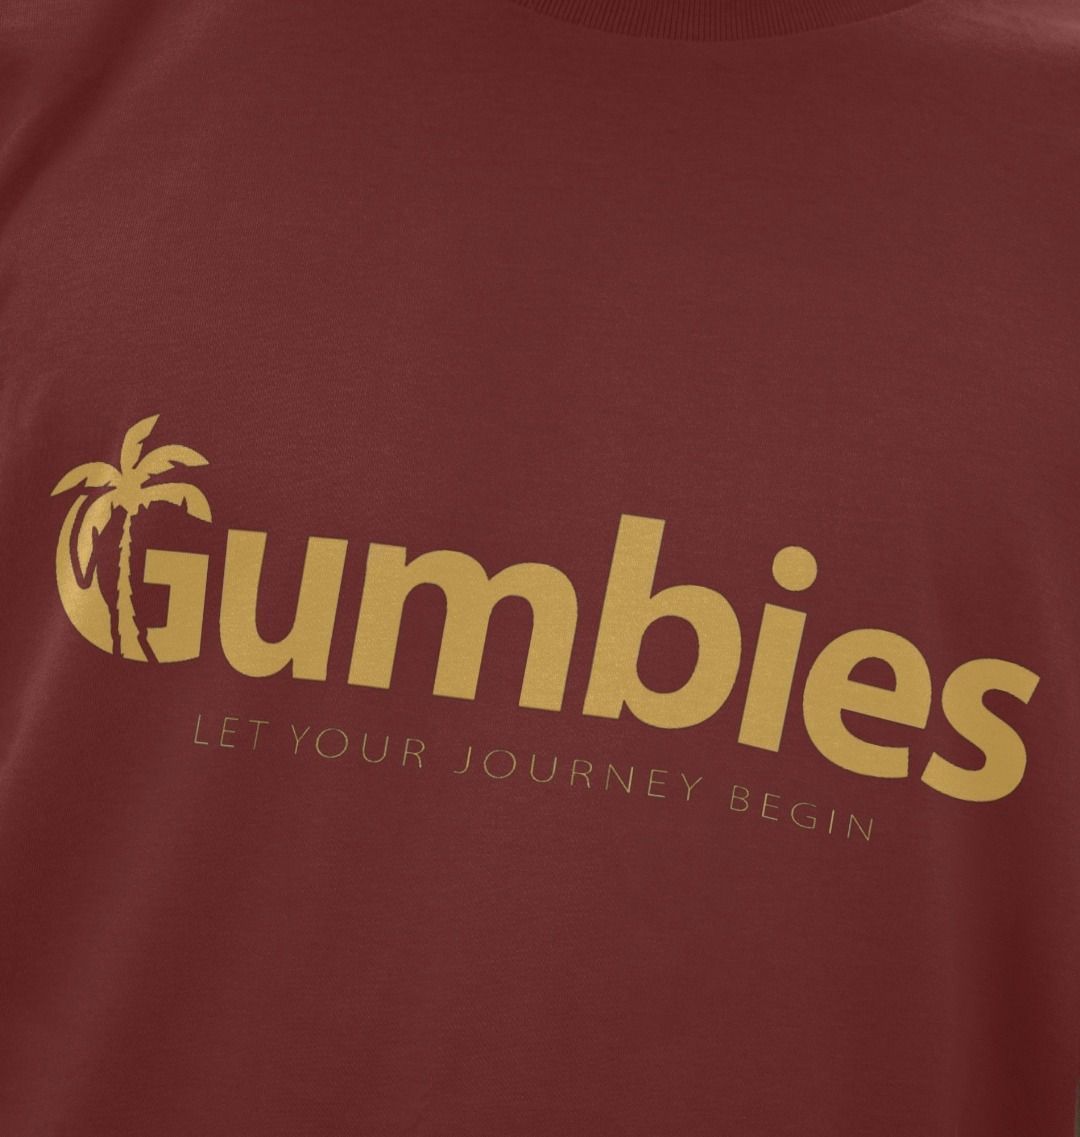 Gumbies Full Logo Red Wine/Yellow - Unisex Organic Cotton T-Shirt